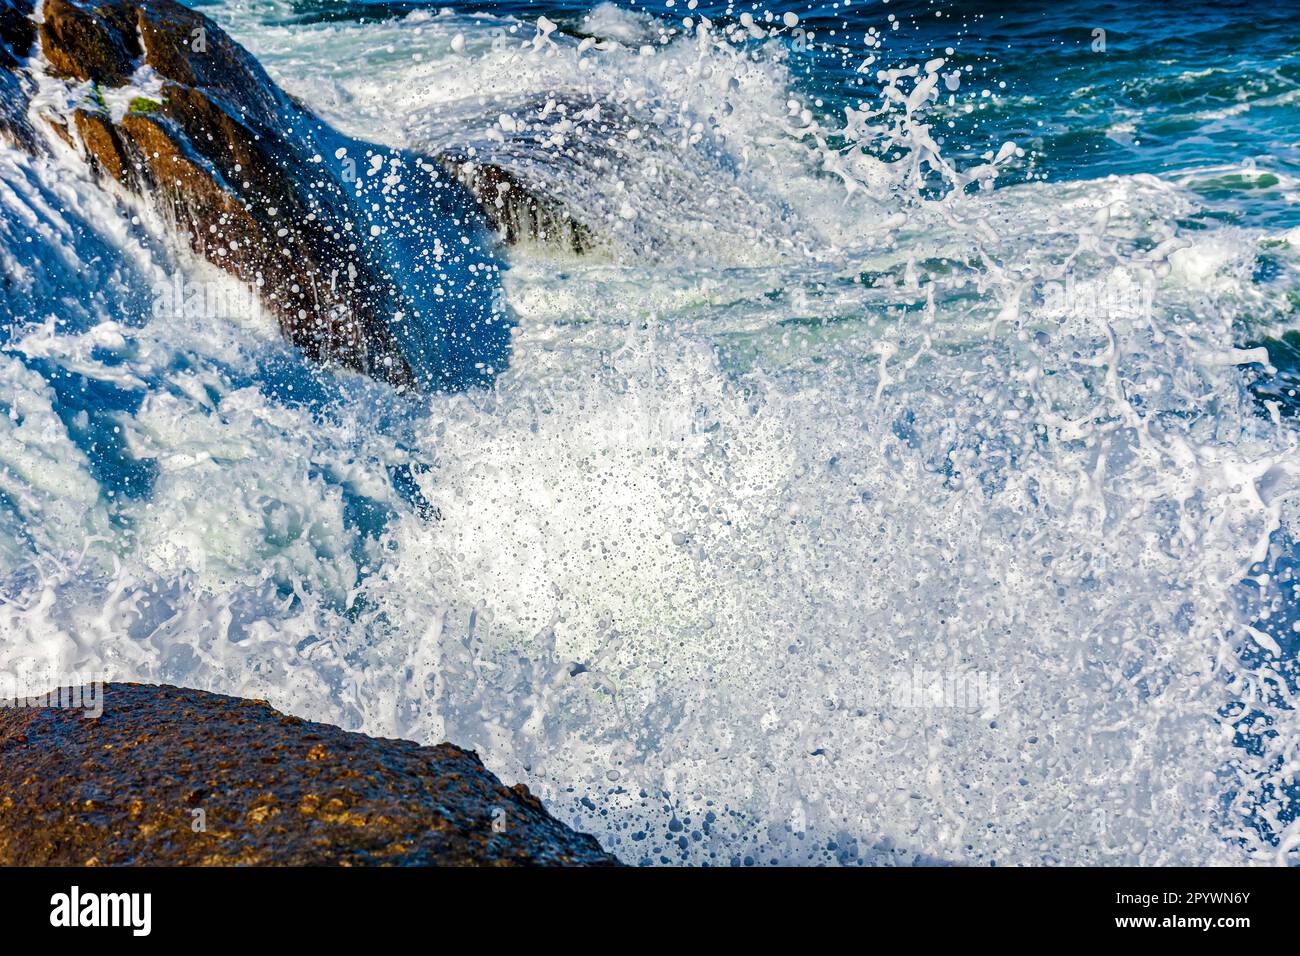 Urto d'onda contro le rocce con spruzzi d'acqua di mare in aria, Brasile Foto Stock